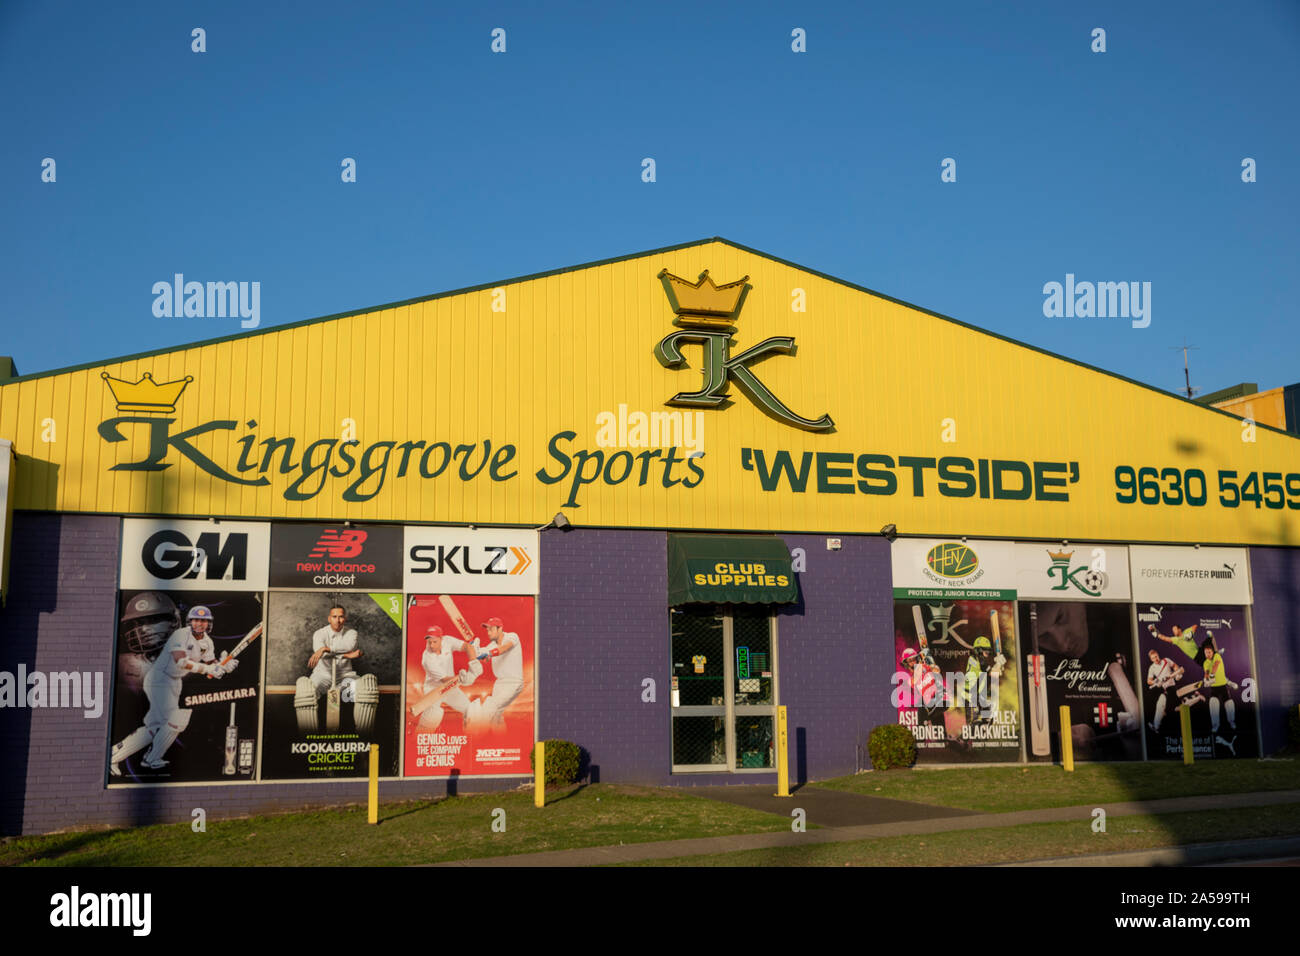 Tienda deportiva australiana en Parramatta Sydney vendiendo ropa deportiva y equipamiento deportivo,Australia Foto de stock